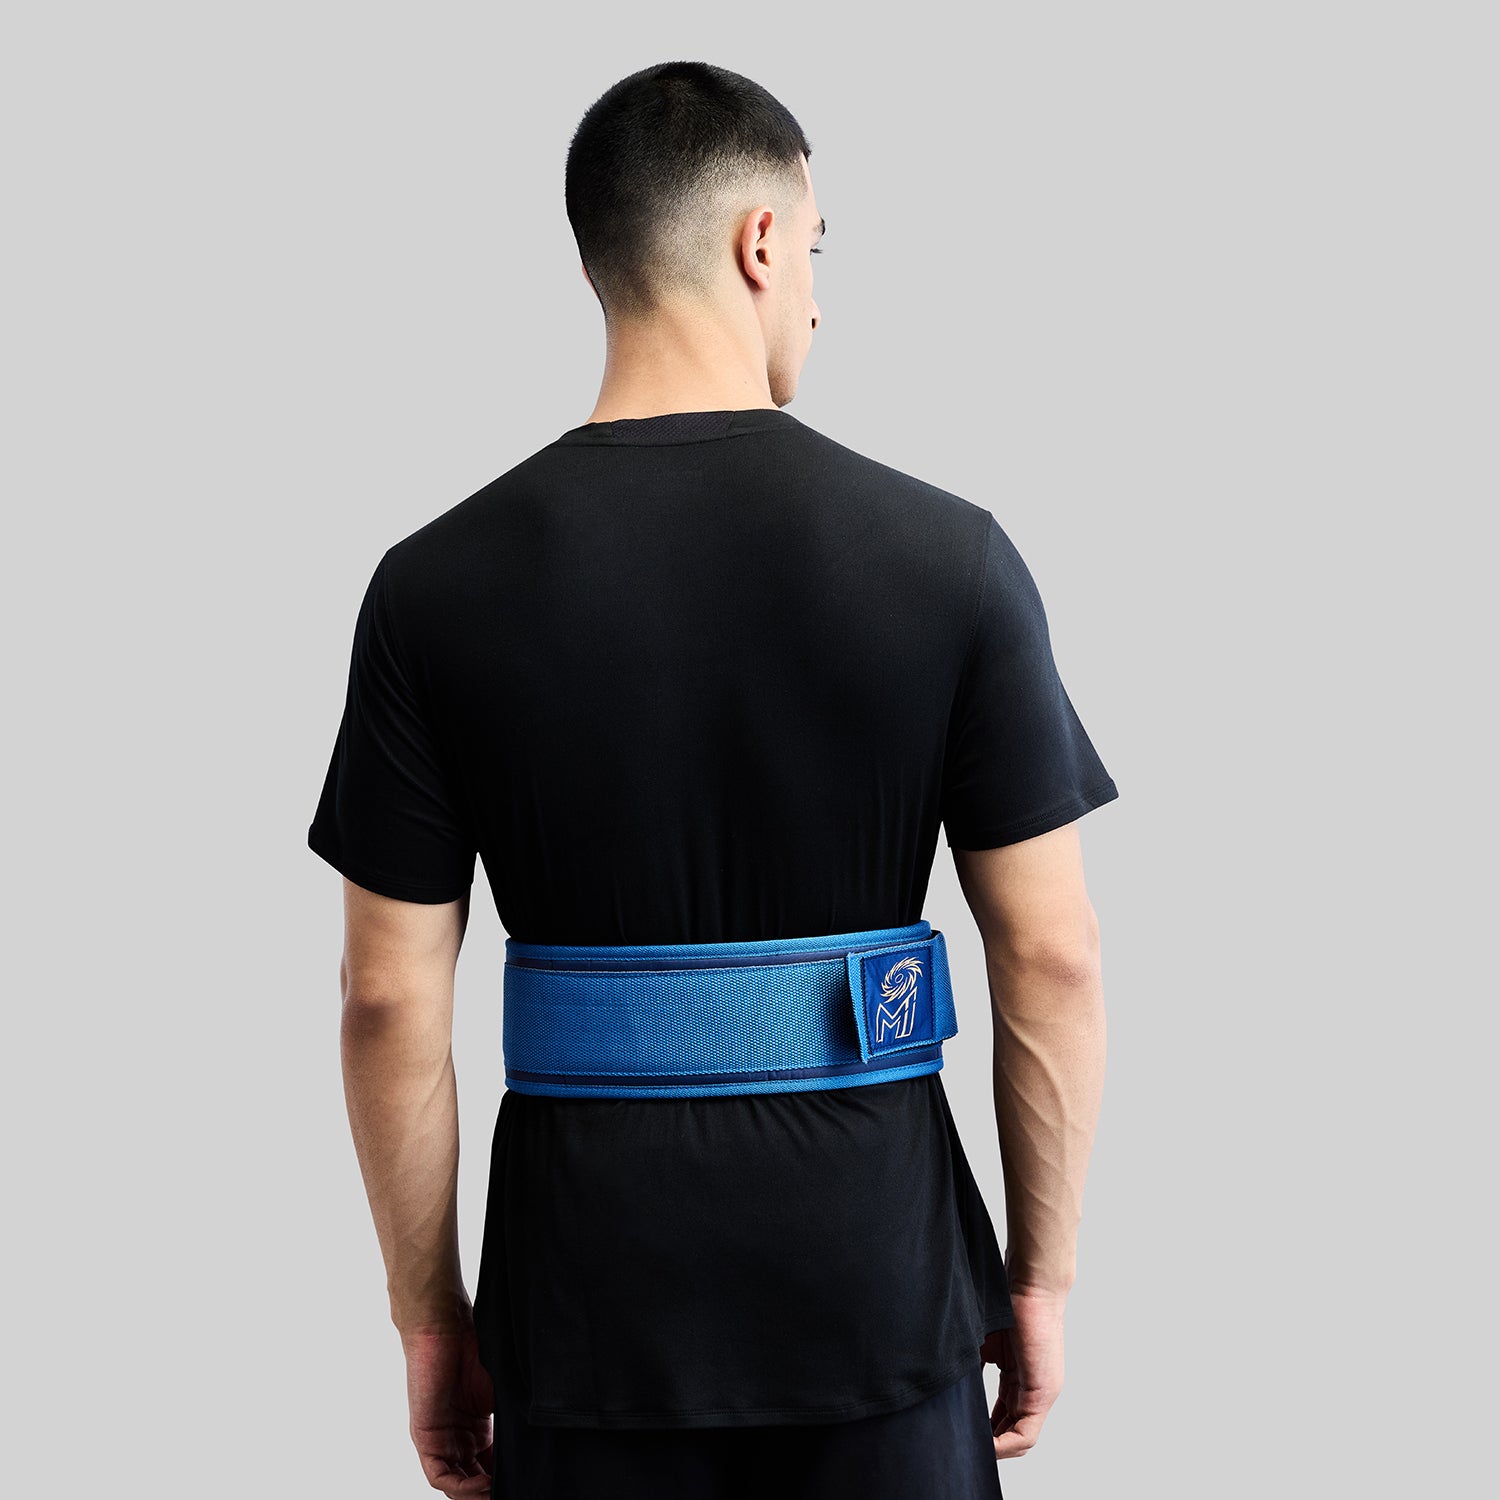 Official MI Merch - Gym Belt